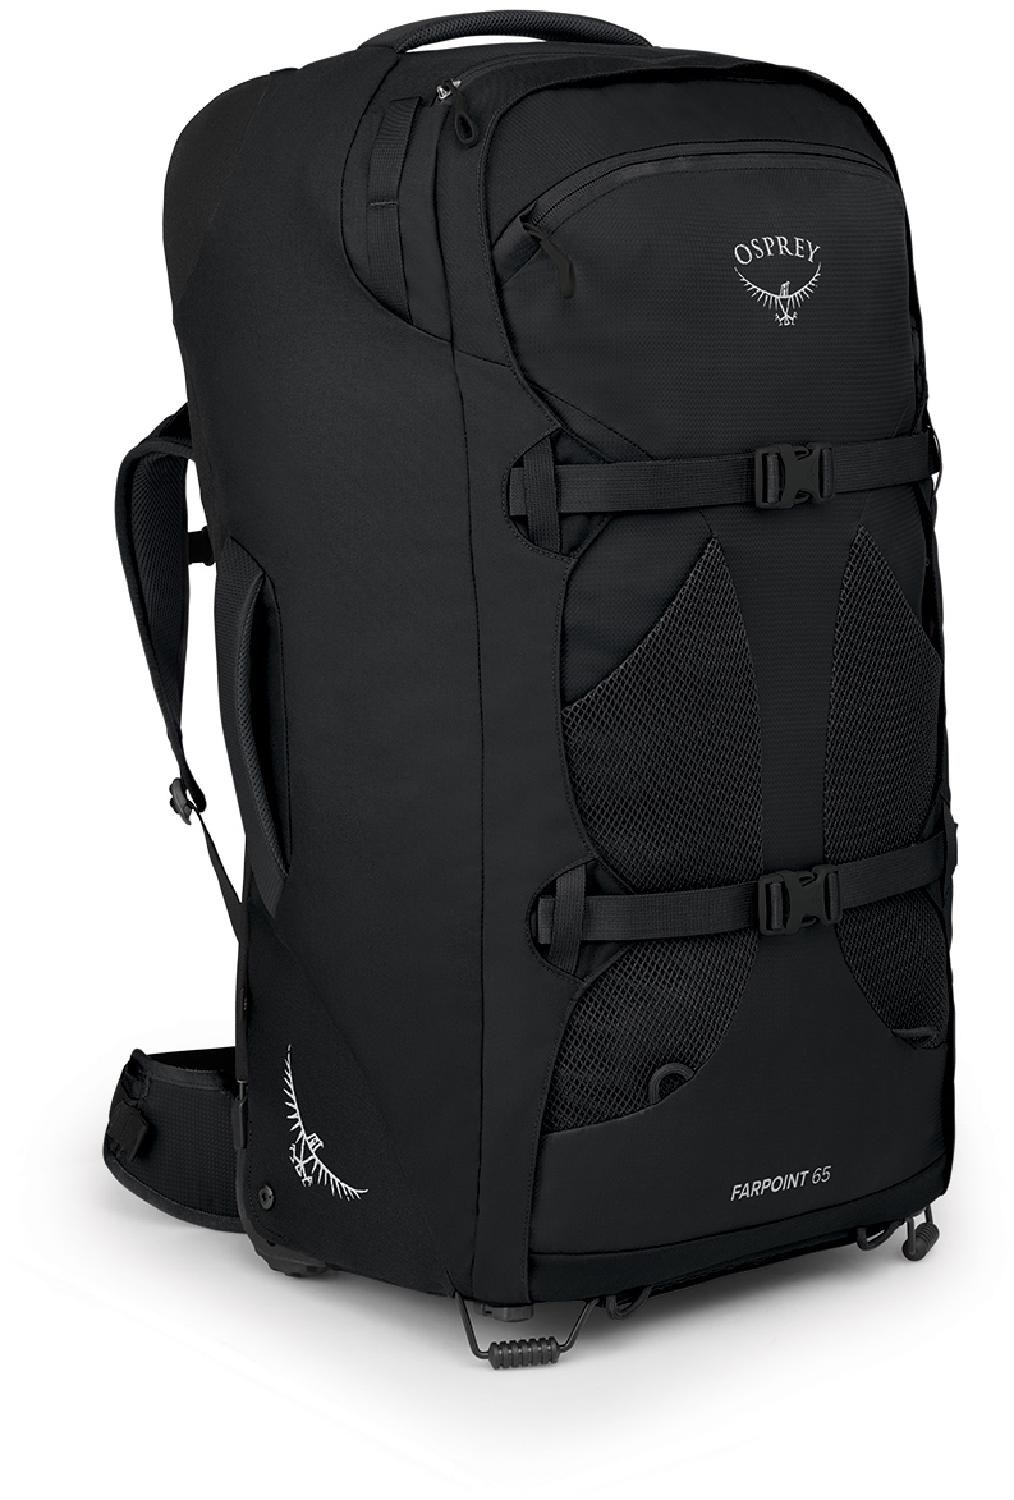 Дорожный рюкзак Farpoint 65 на колесиках — мужской Osprey, черный